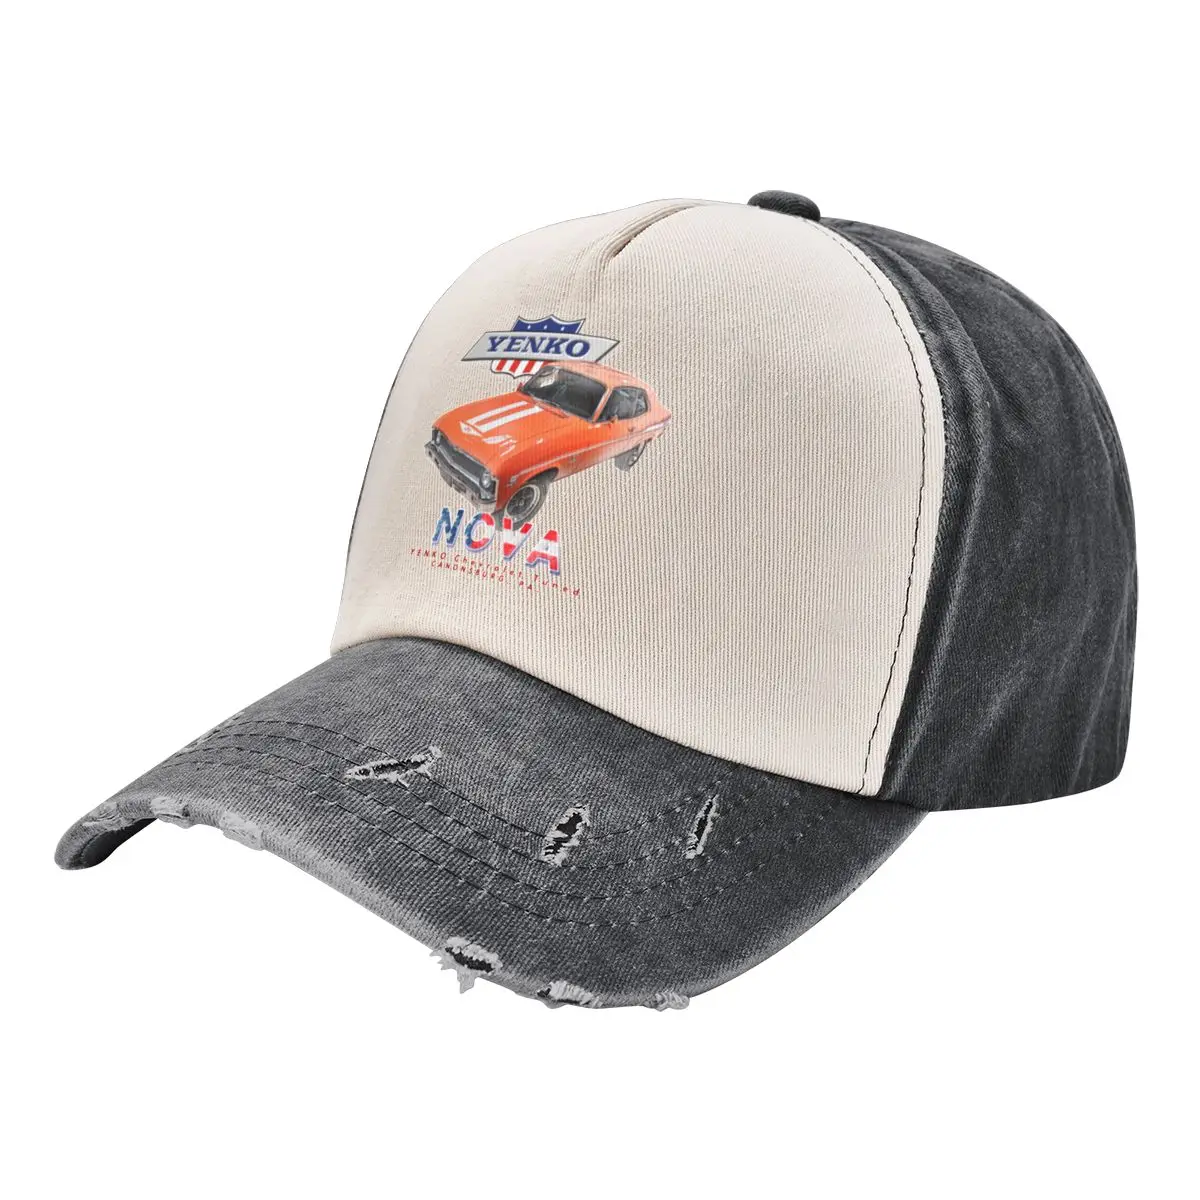 

Yenko Nova 427 Muscle Racecar Hotrod Cowboy Hat derby hat Luxury Cap beach hat Hat Male Women's